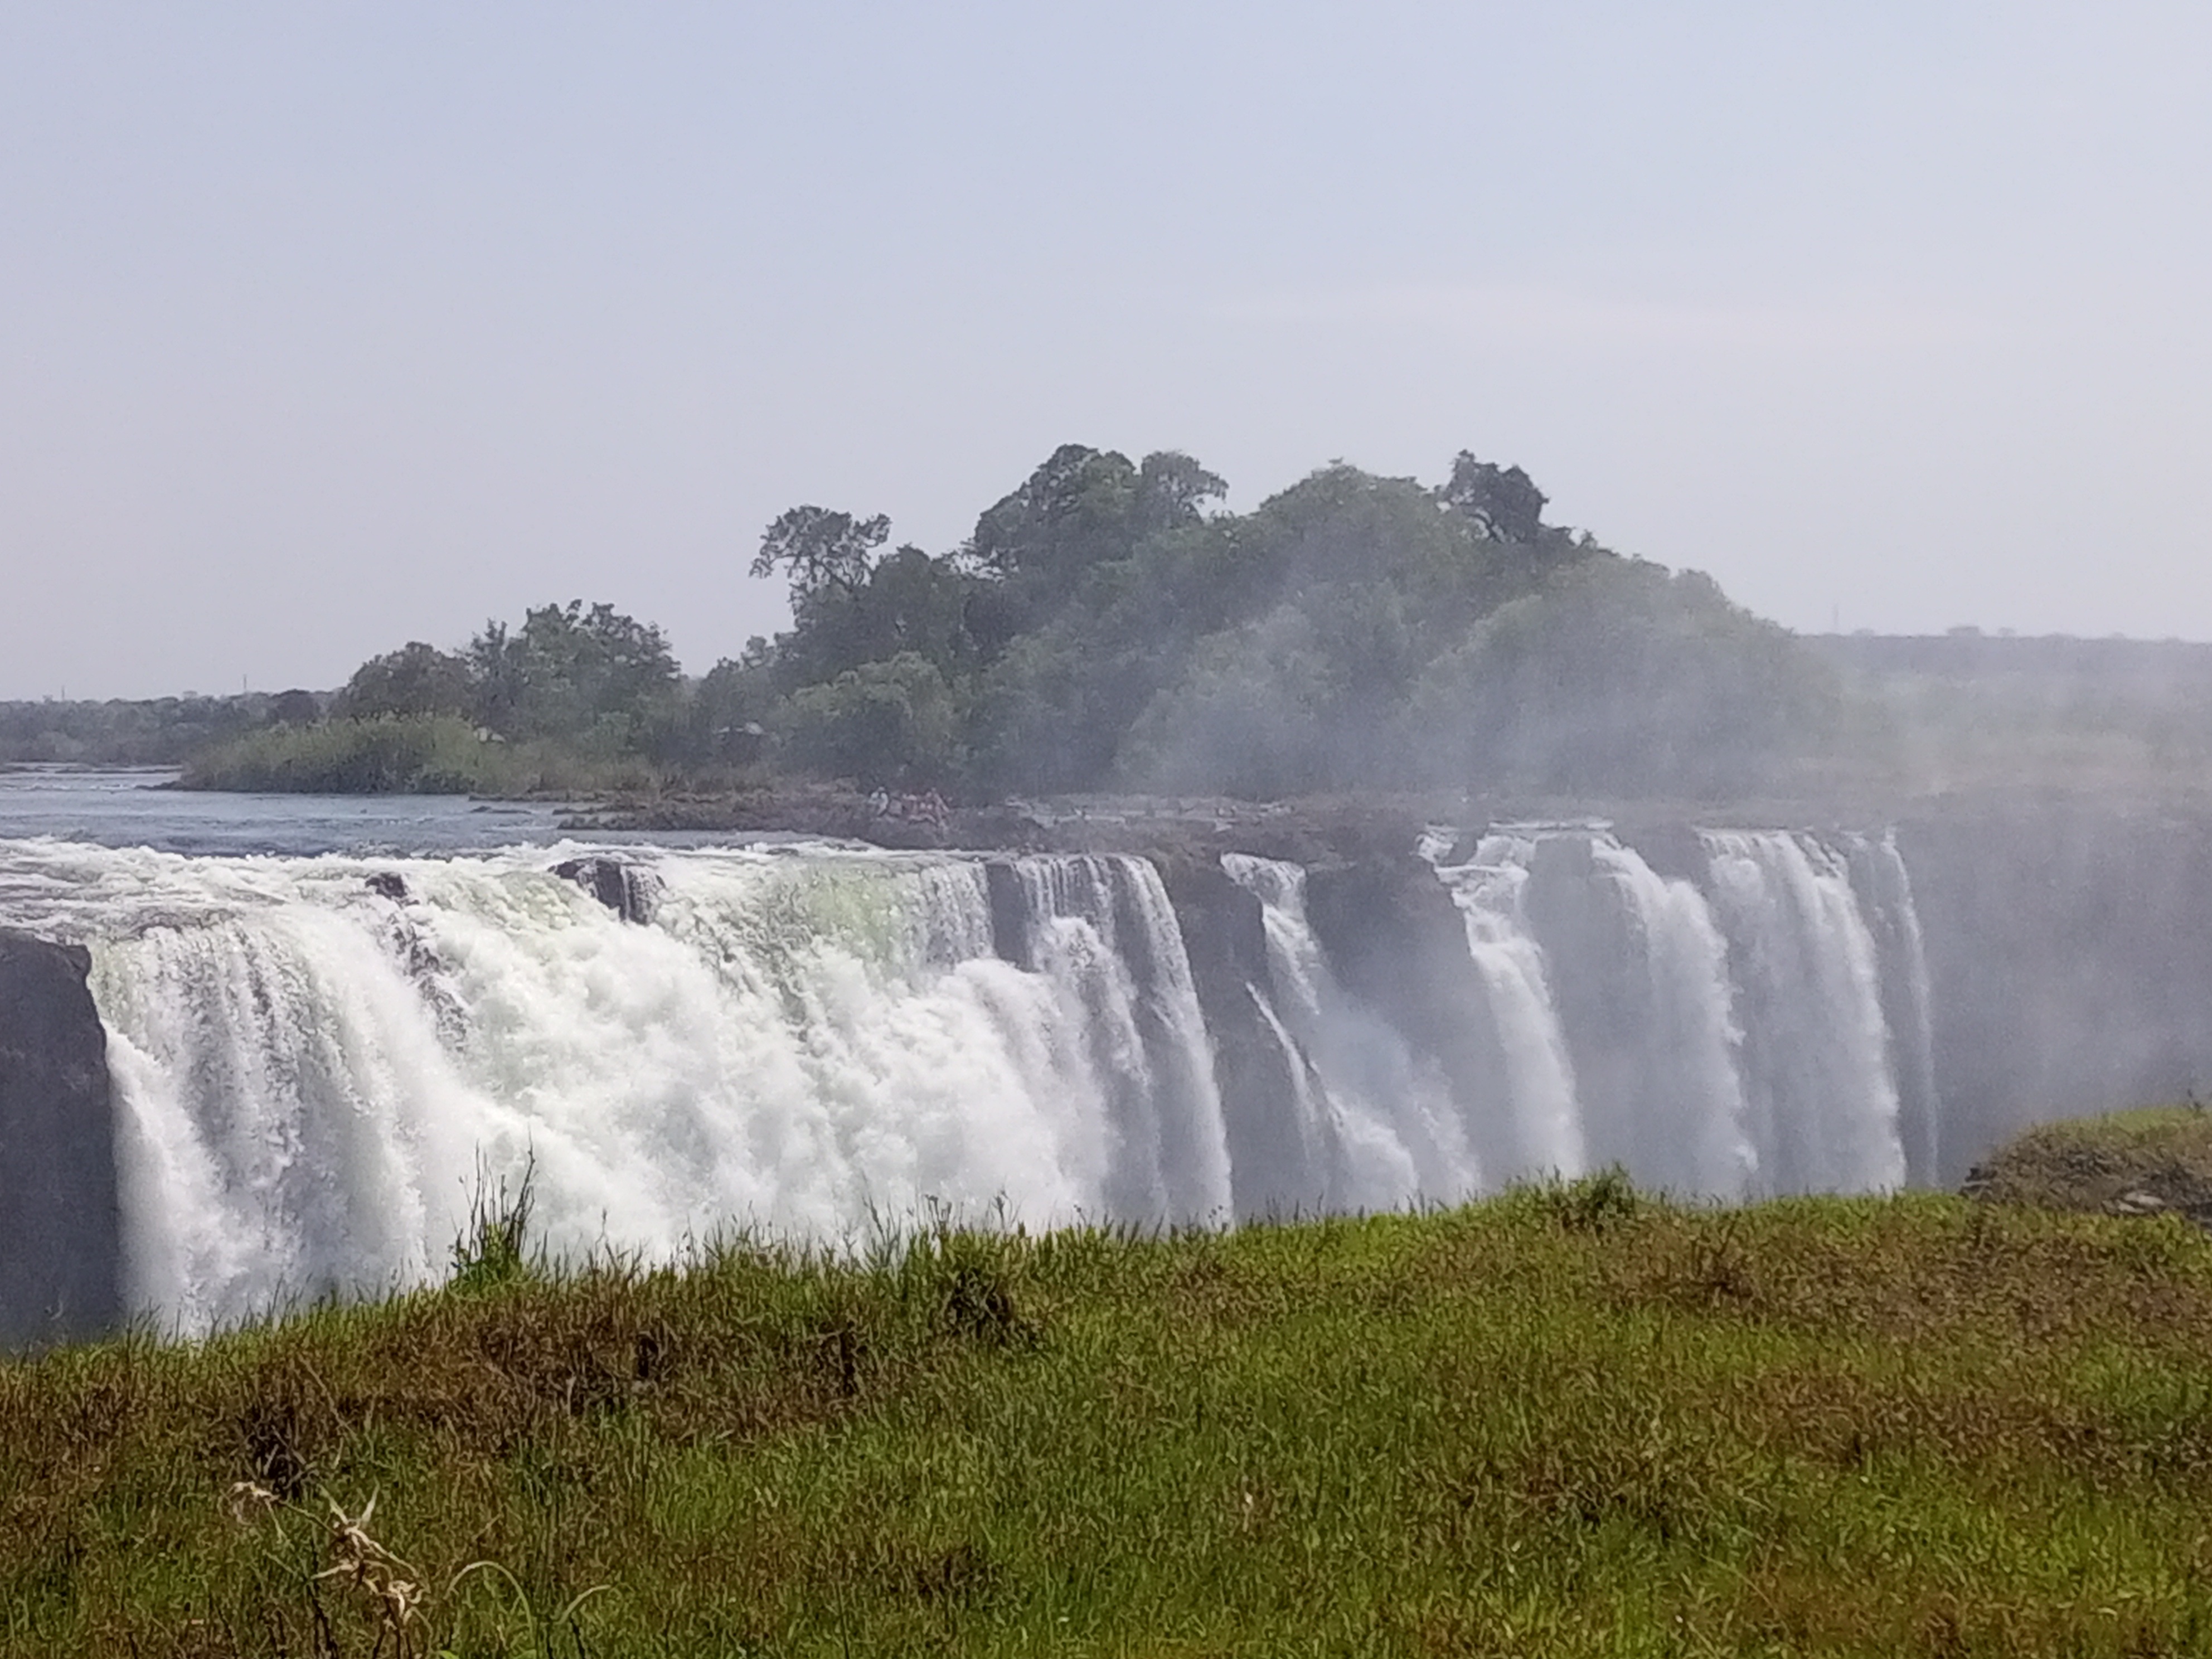 tourhub | Falls Breeze Tours | Victoria Falls Zimbabwe/Zambia and Chobe National Park Botswana 4D3N 